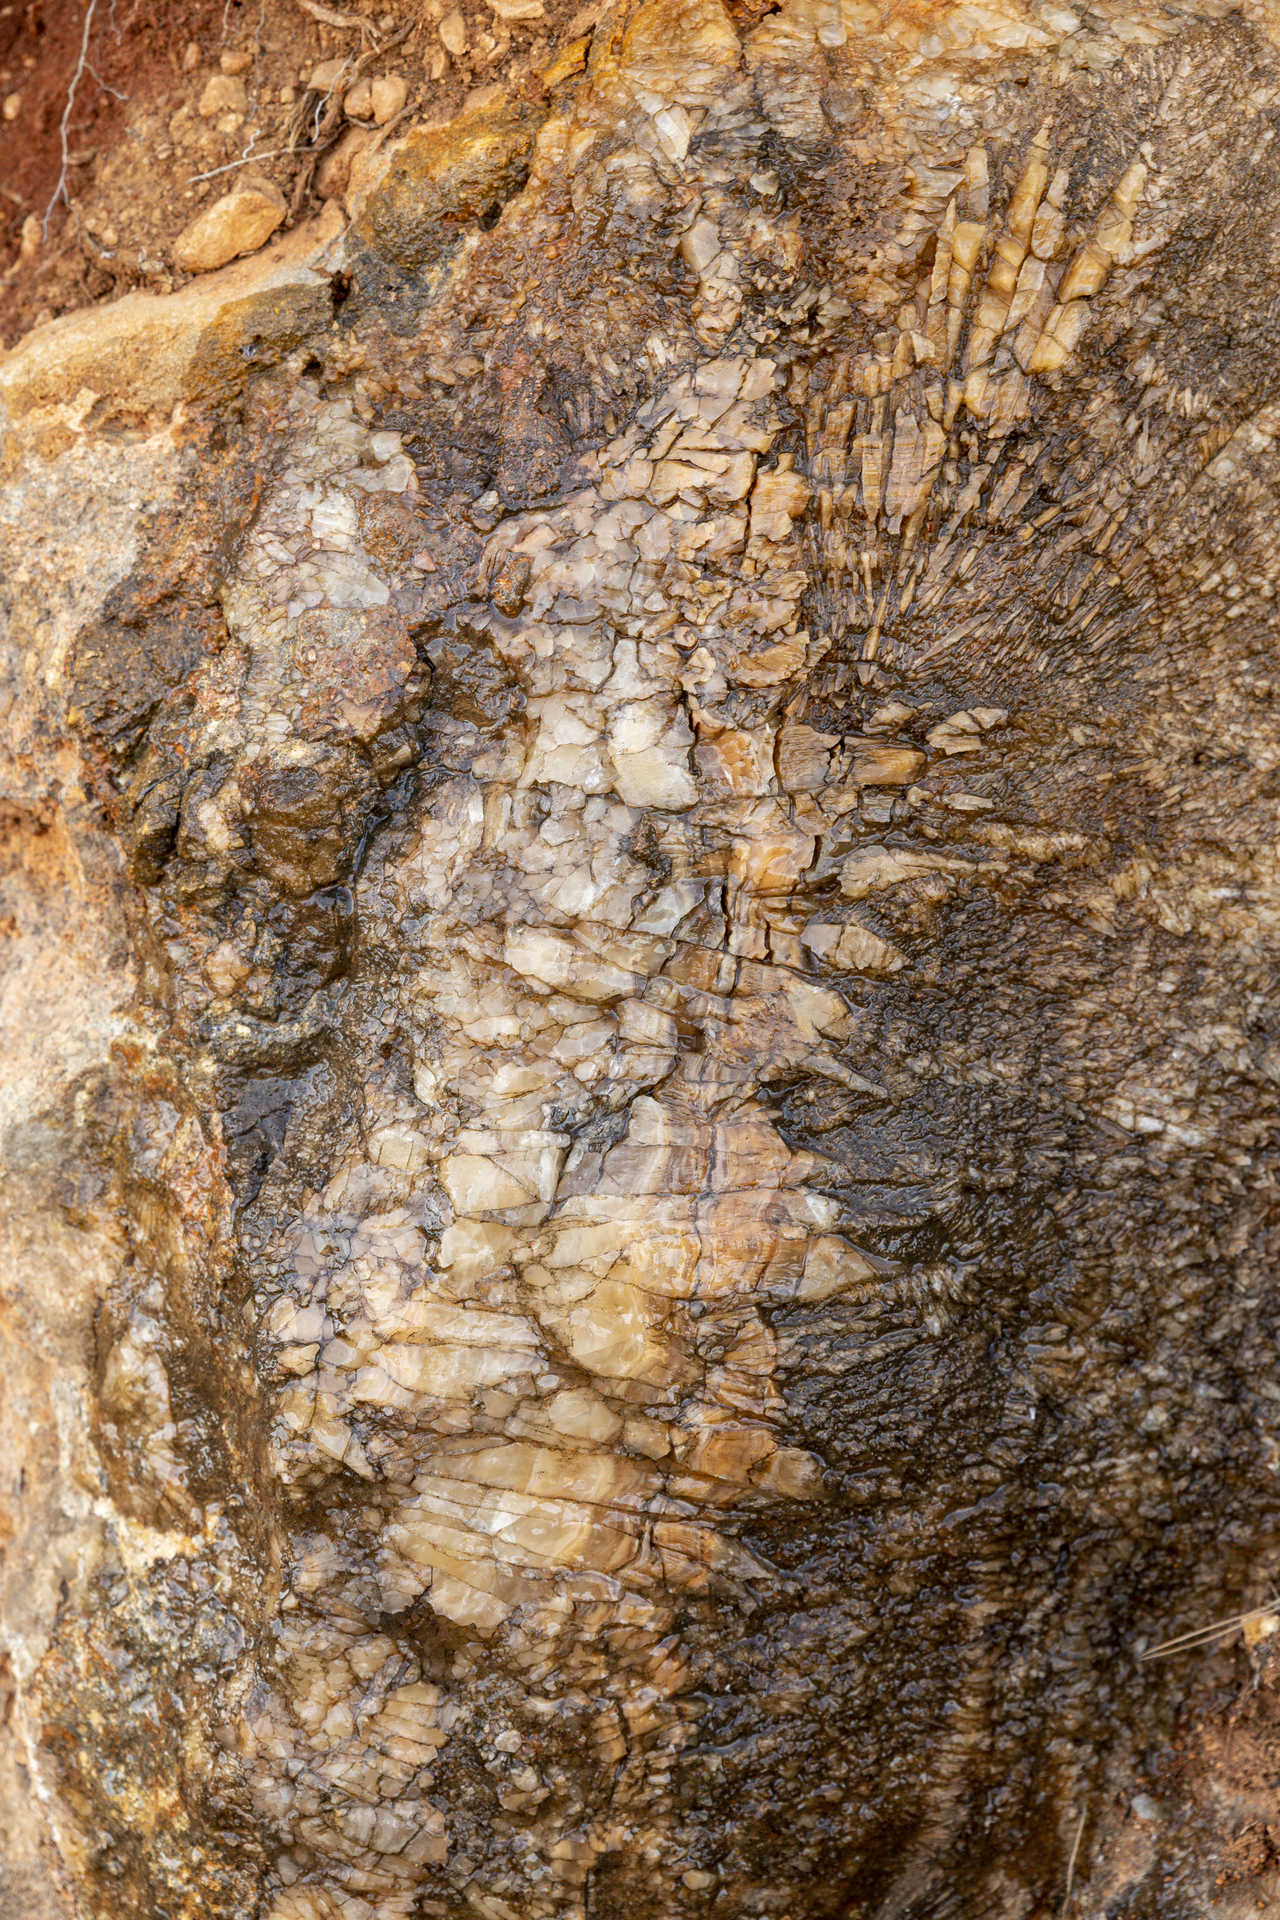 Fossilised tree